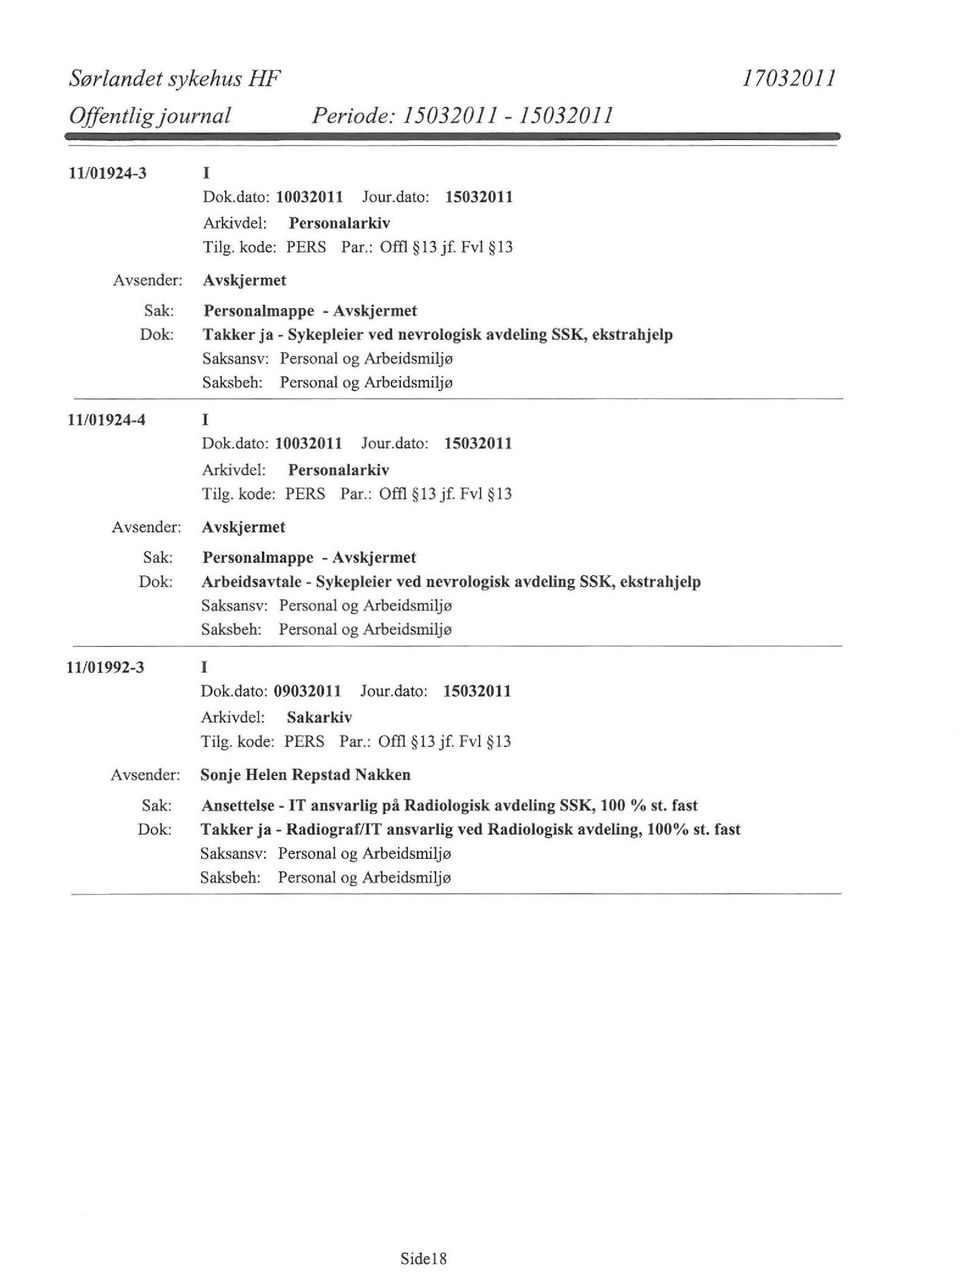 Fvl 13 Personalmappe - Arbeidsavtale - Sykepleier ved nevrologisk avdeling SSK, ekstrahjelp 11/01992-3 I Sonje Helen